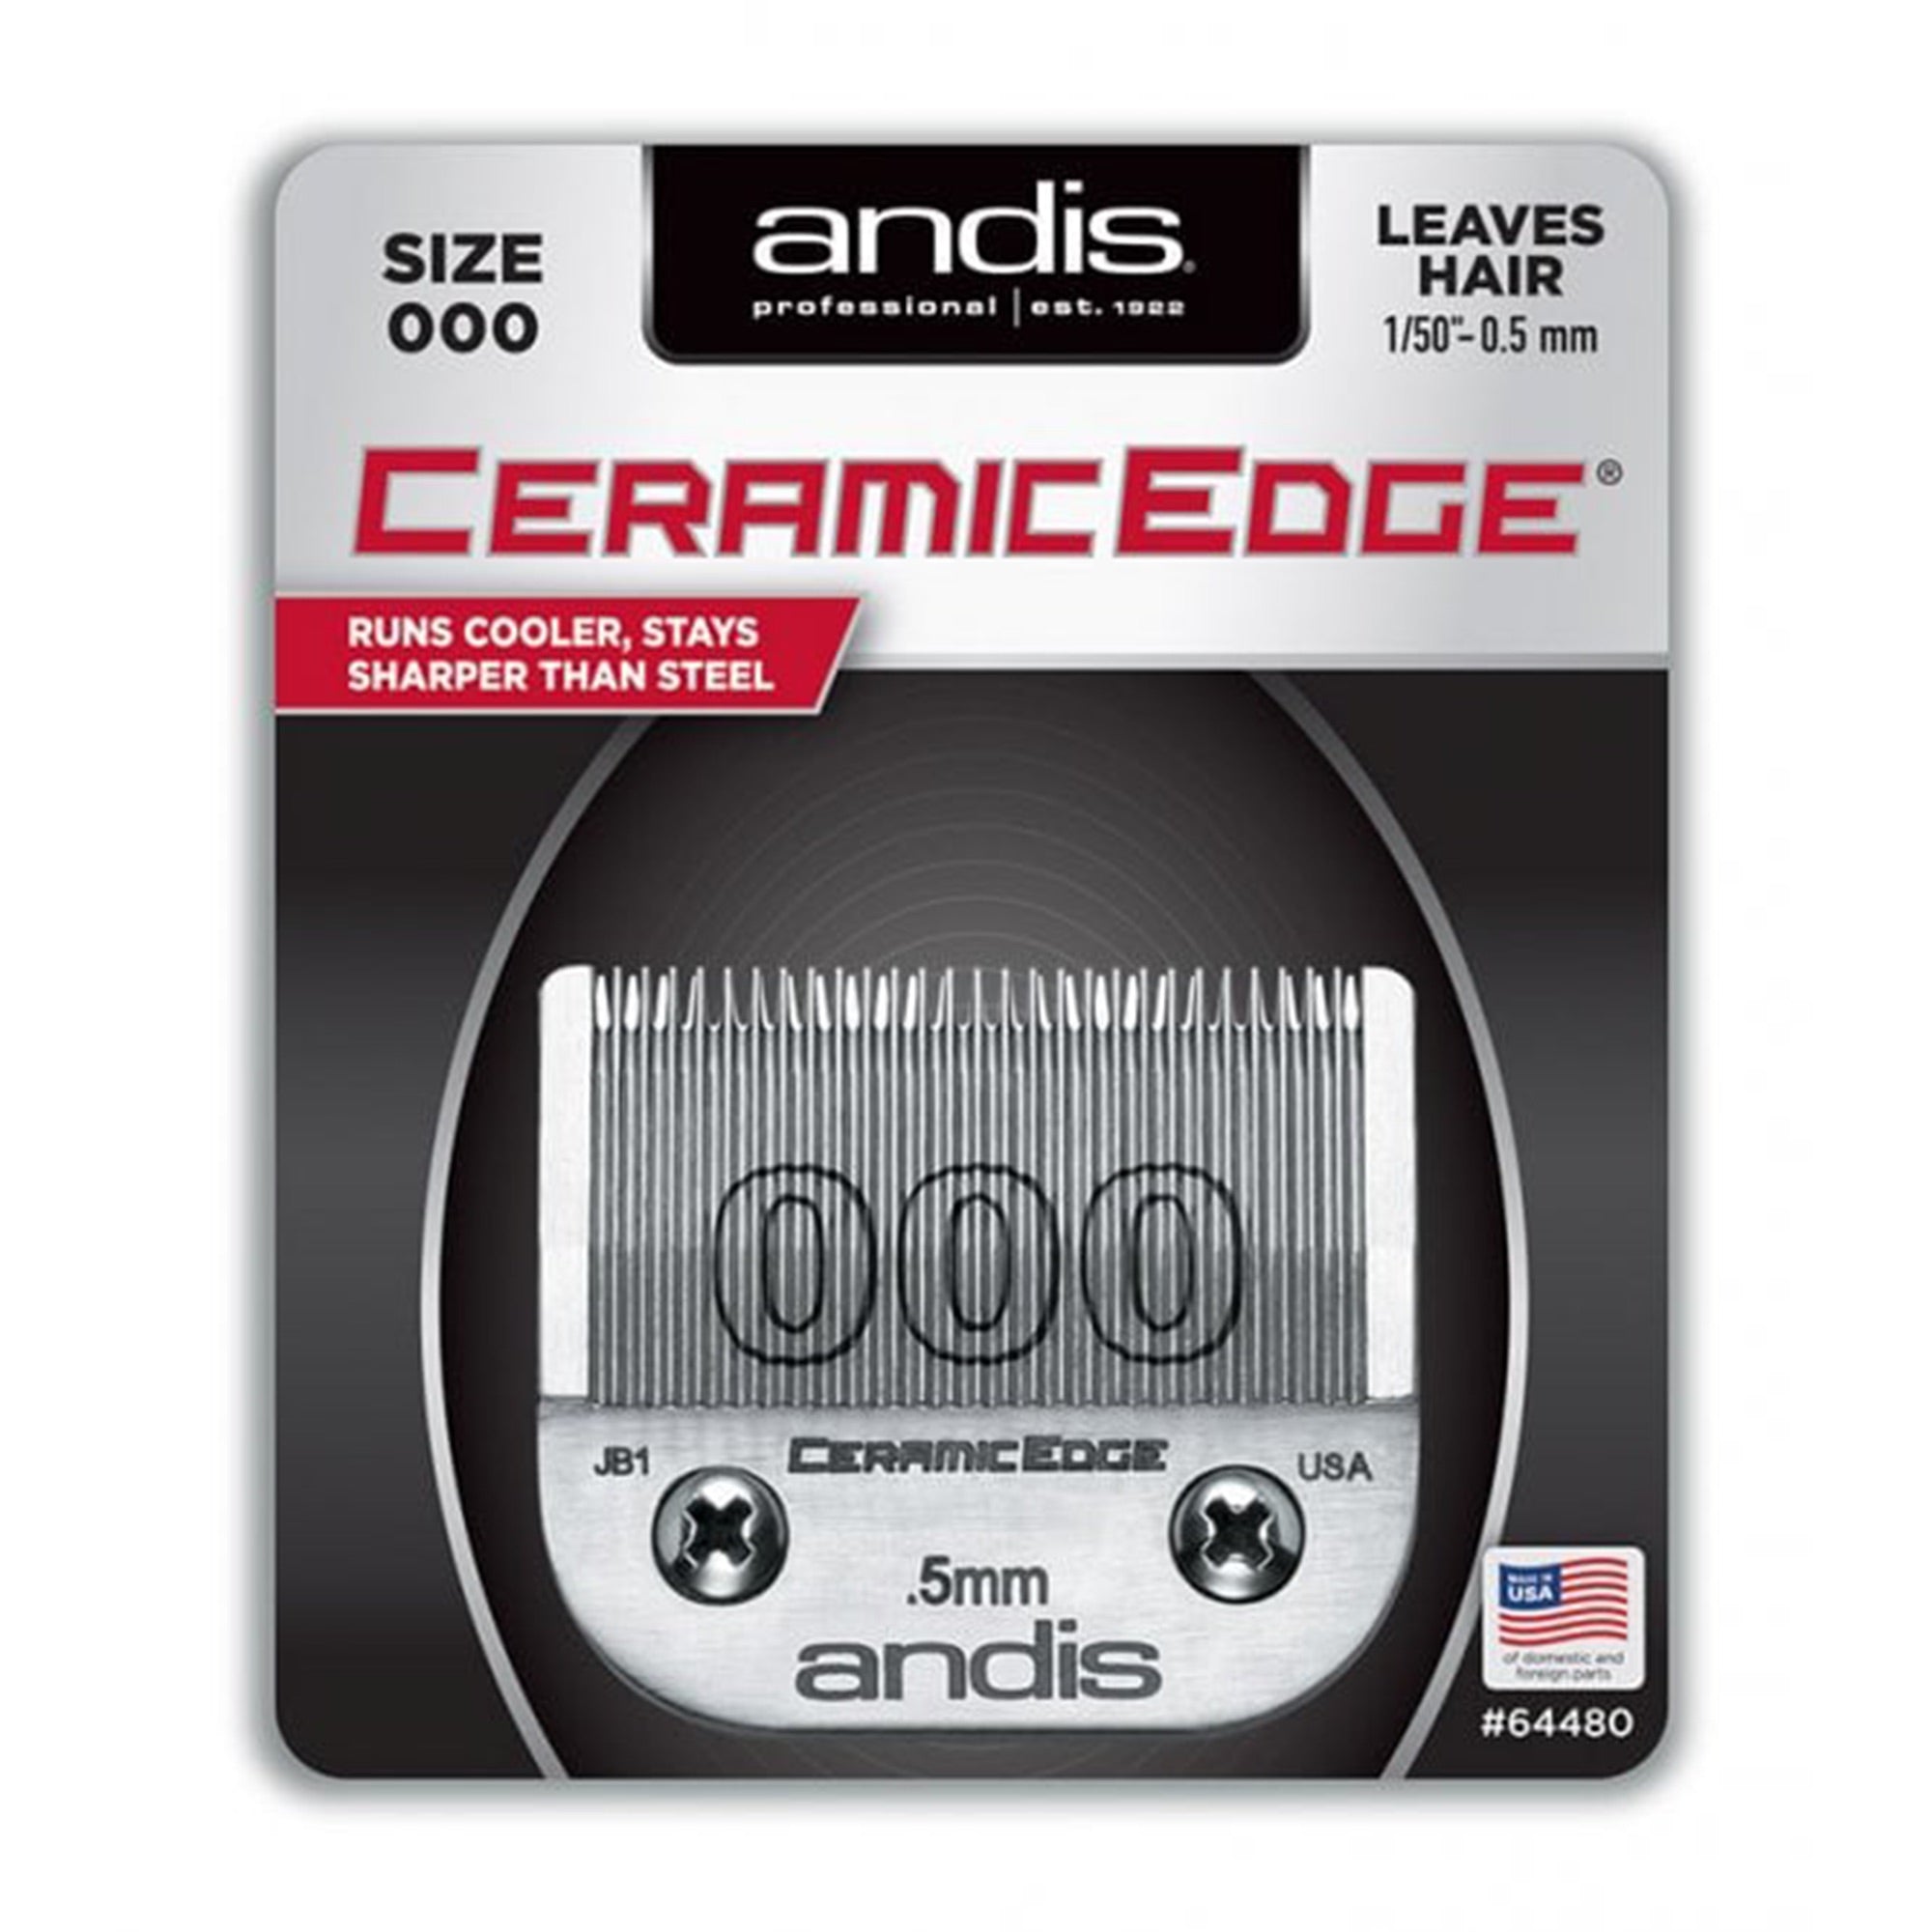 Andis - Ceramic Edge Blade Size 000 #64480